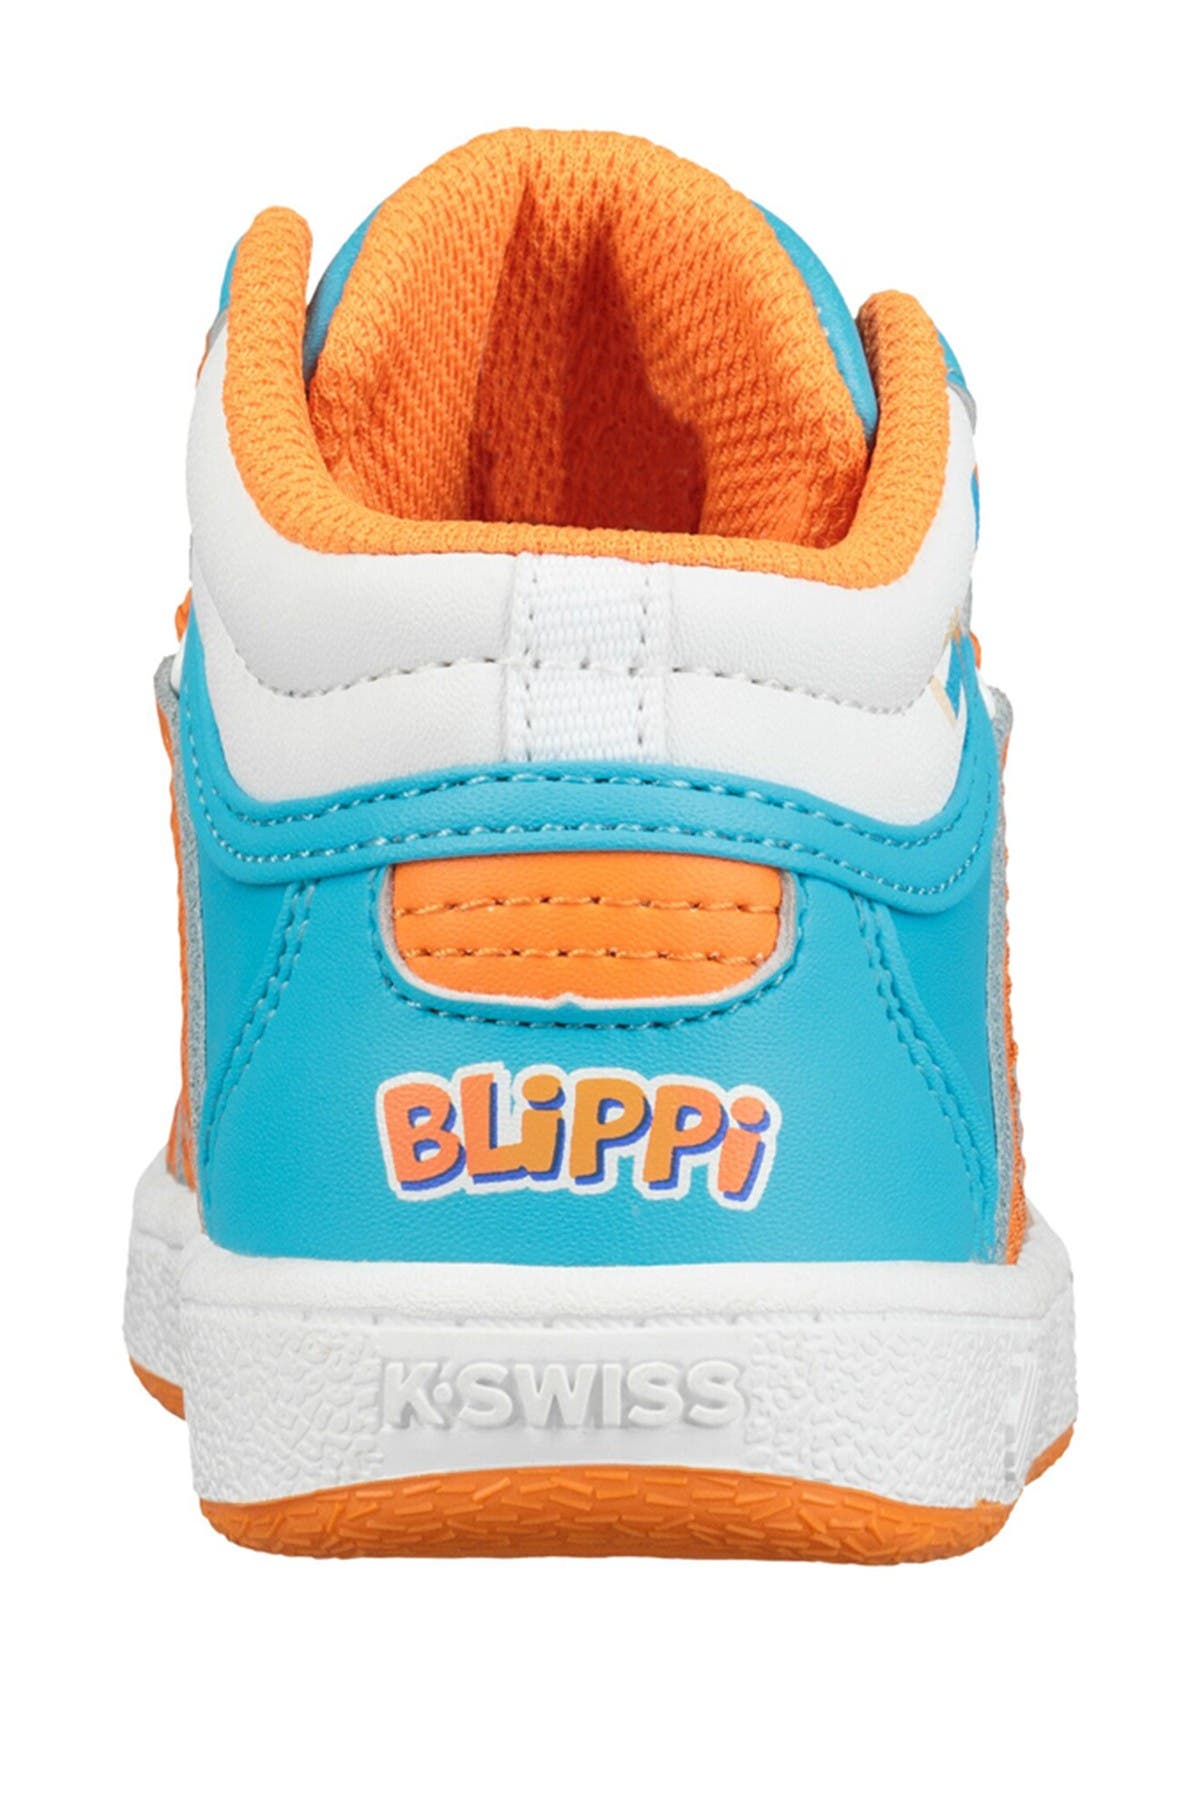 blippi shoes nike